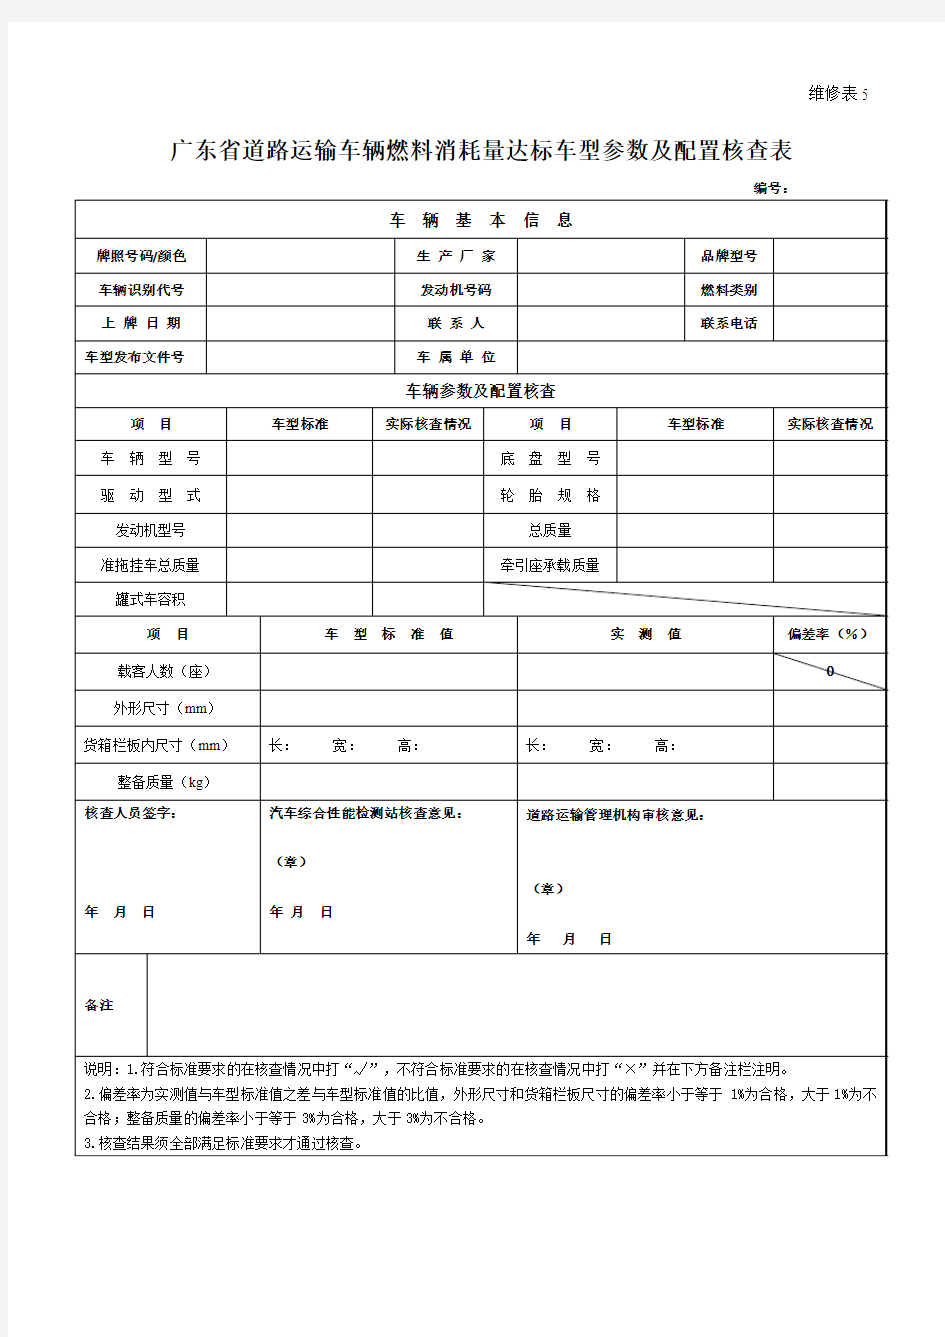 广东省道路运输车辆燃料消耗量达标车型参数及配置核查表